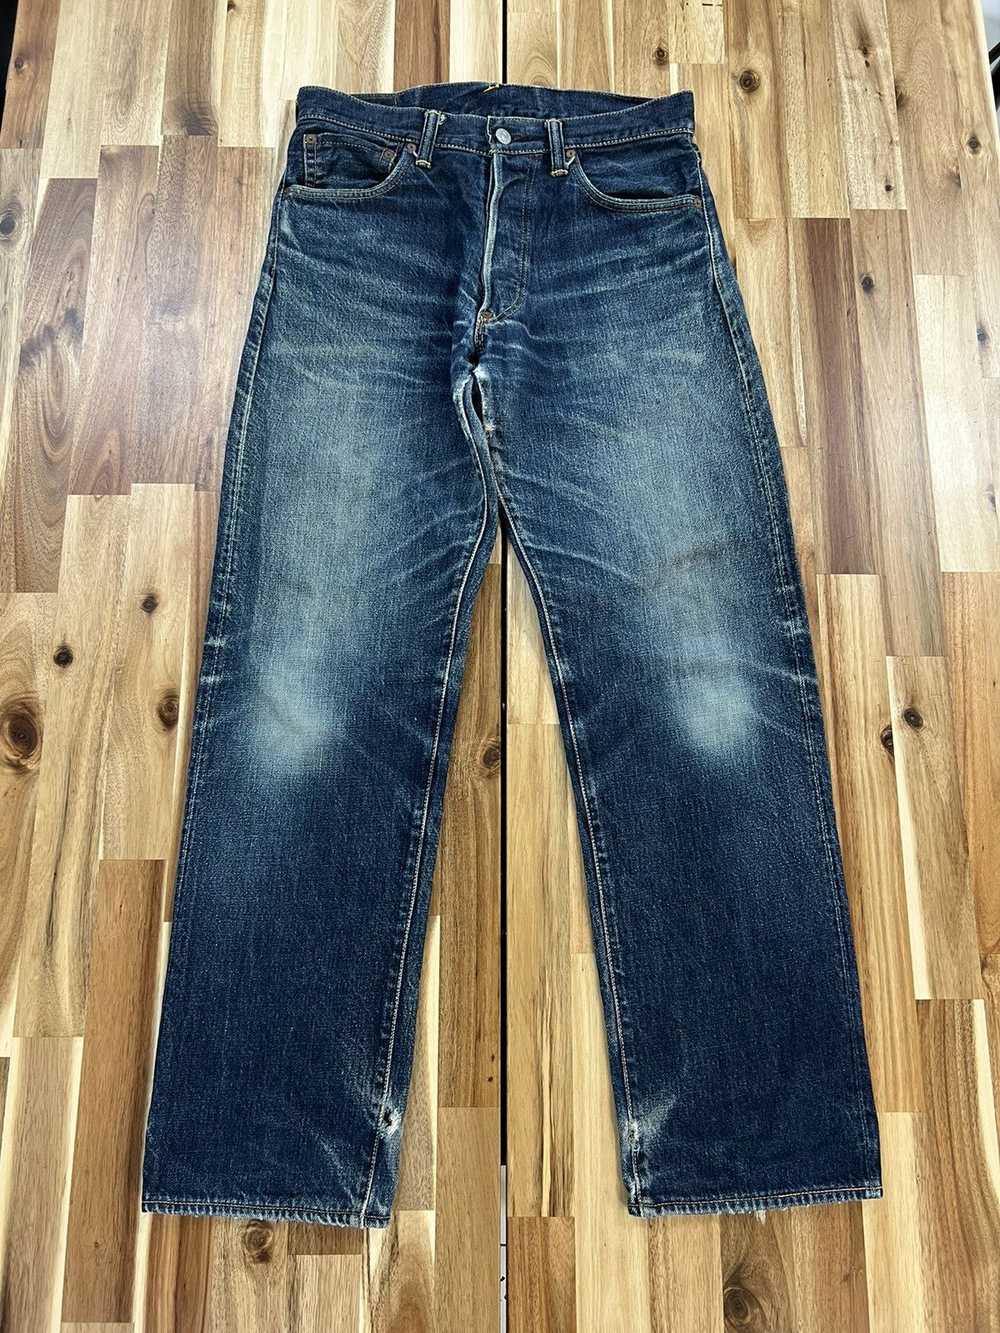 Evisu × Vintage Evisu Jeans By Yamane Daicock Sel… - image 4